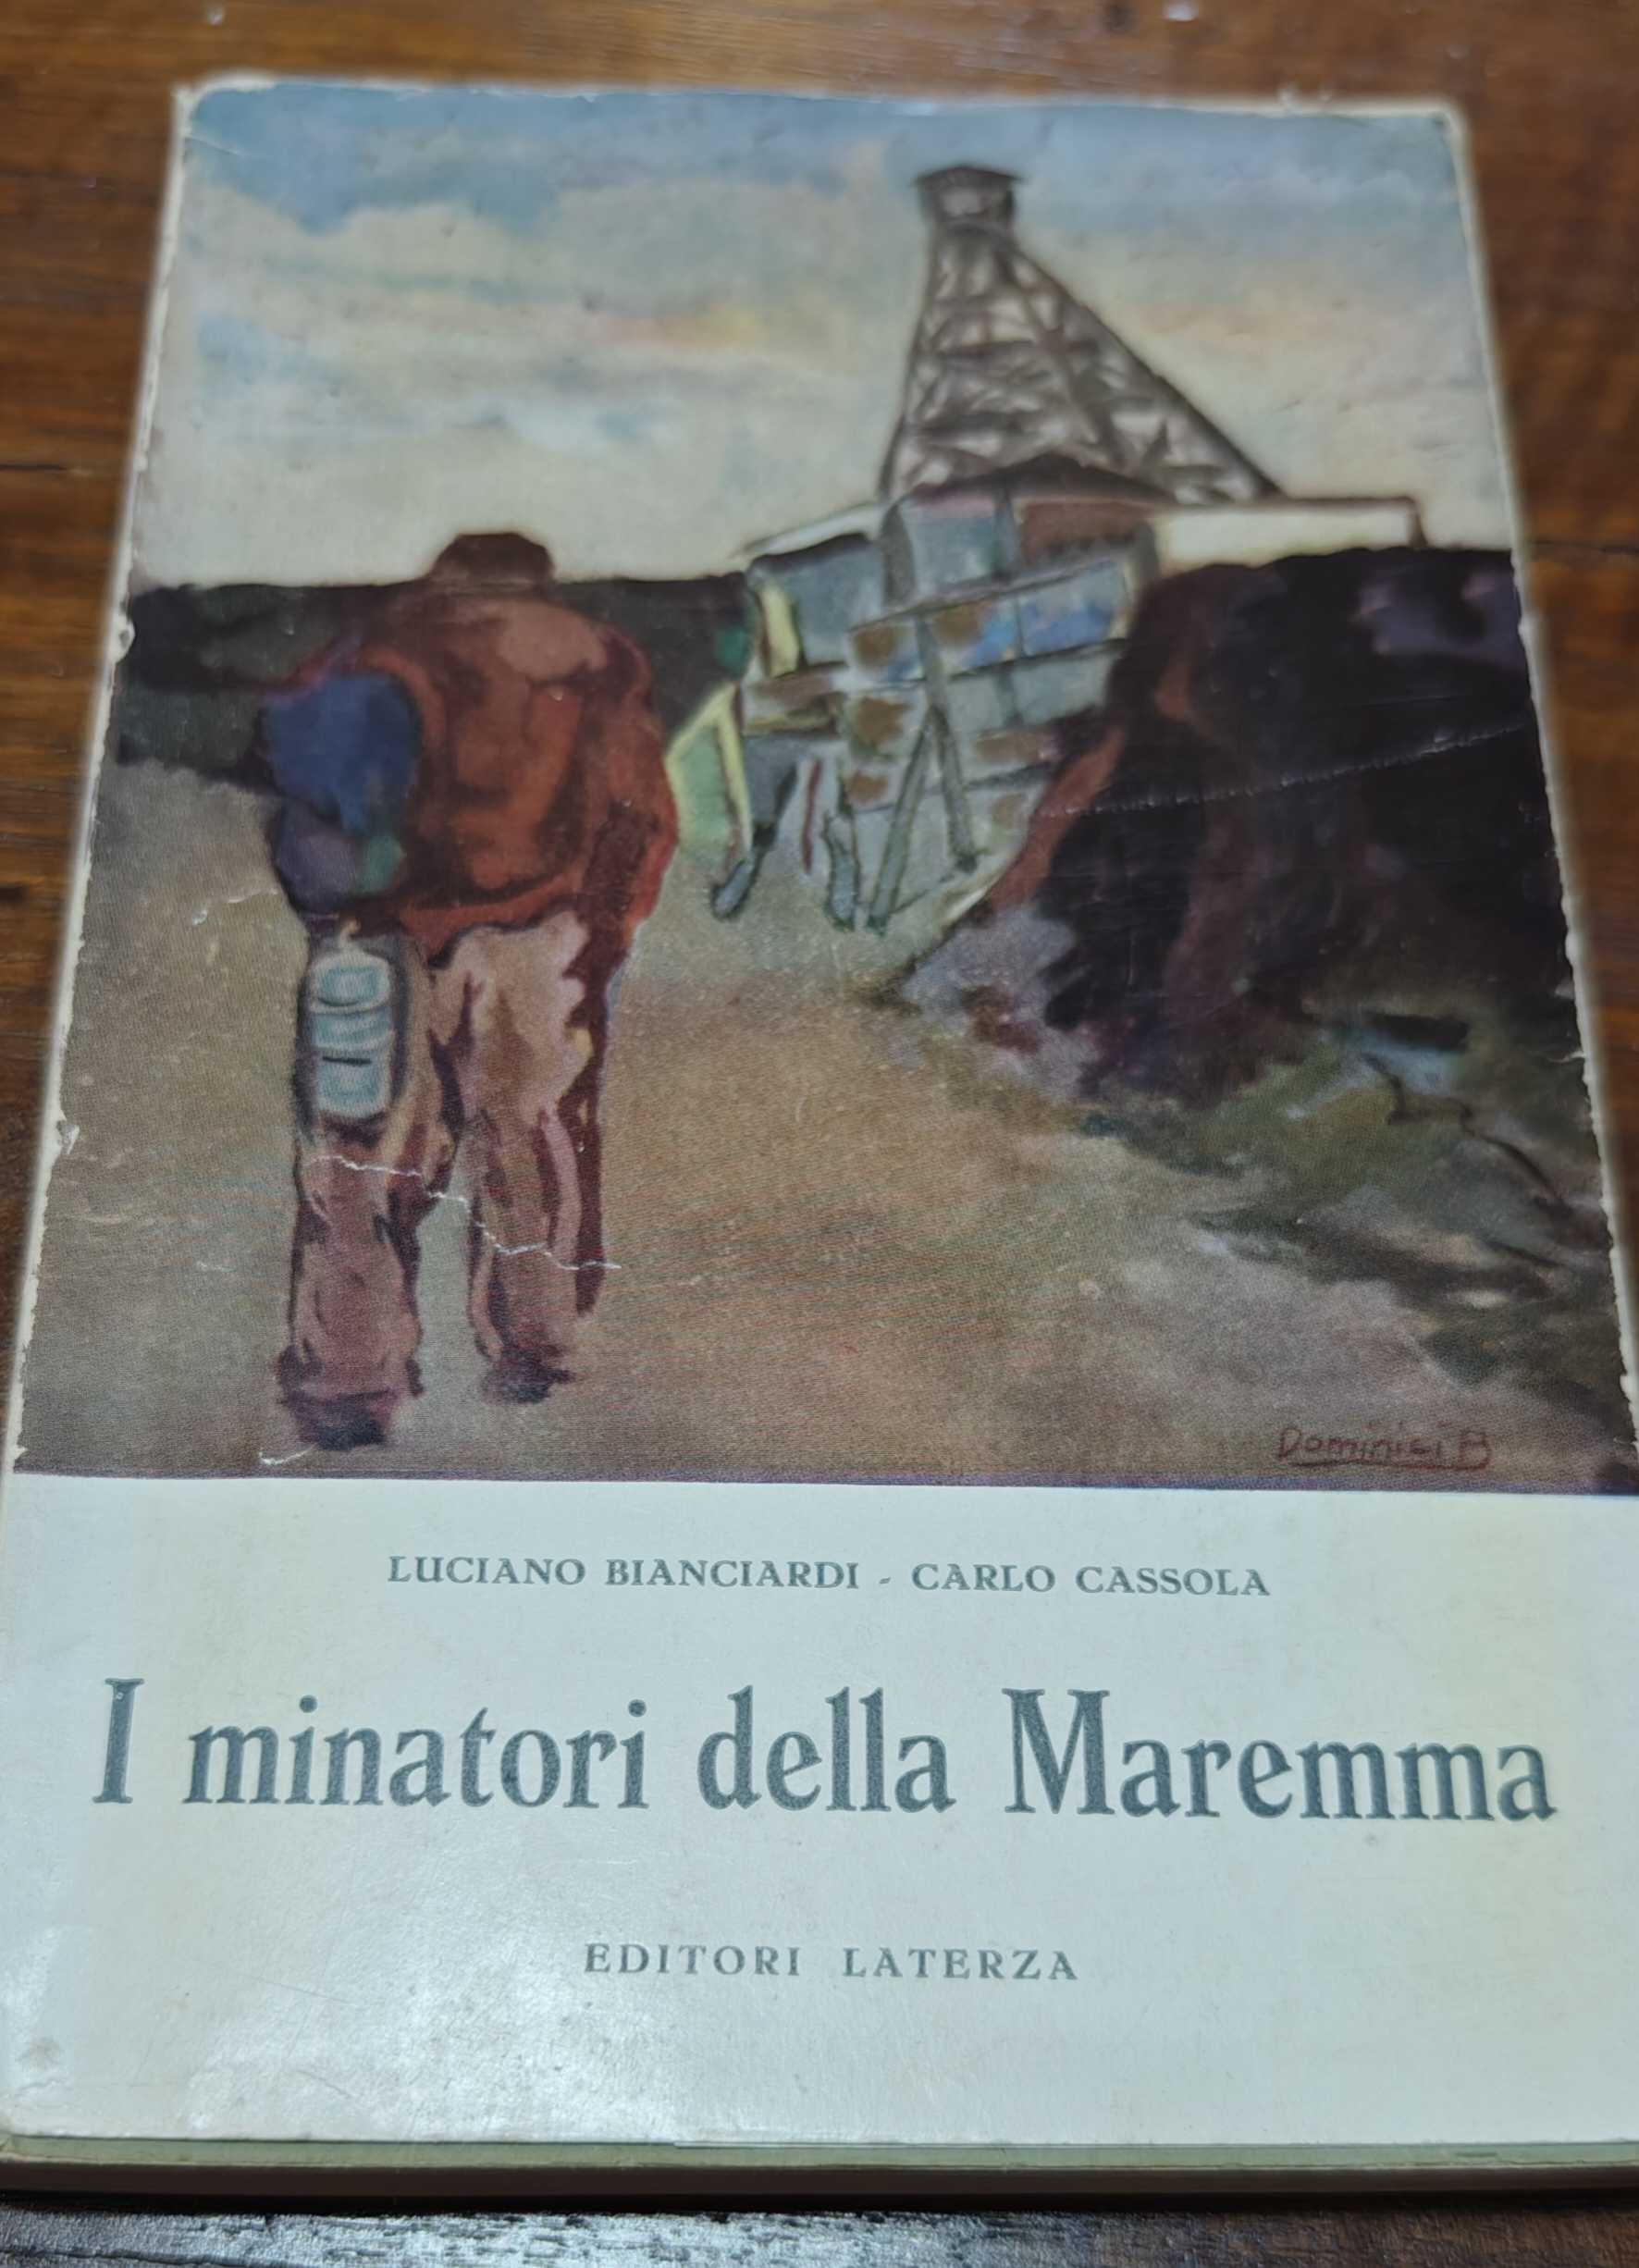 Il primo libro di Luciano Bianciardi (1956) e l’origine del suo impegno sociale e politico